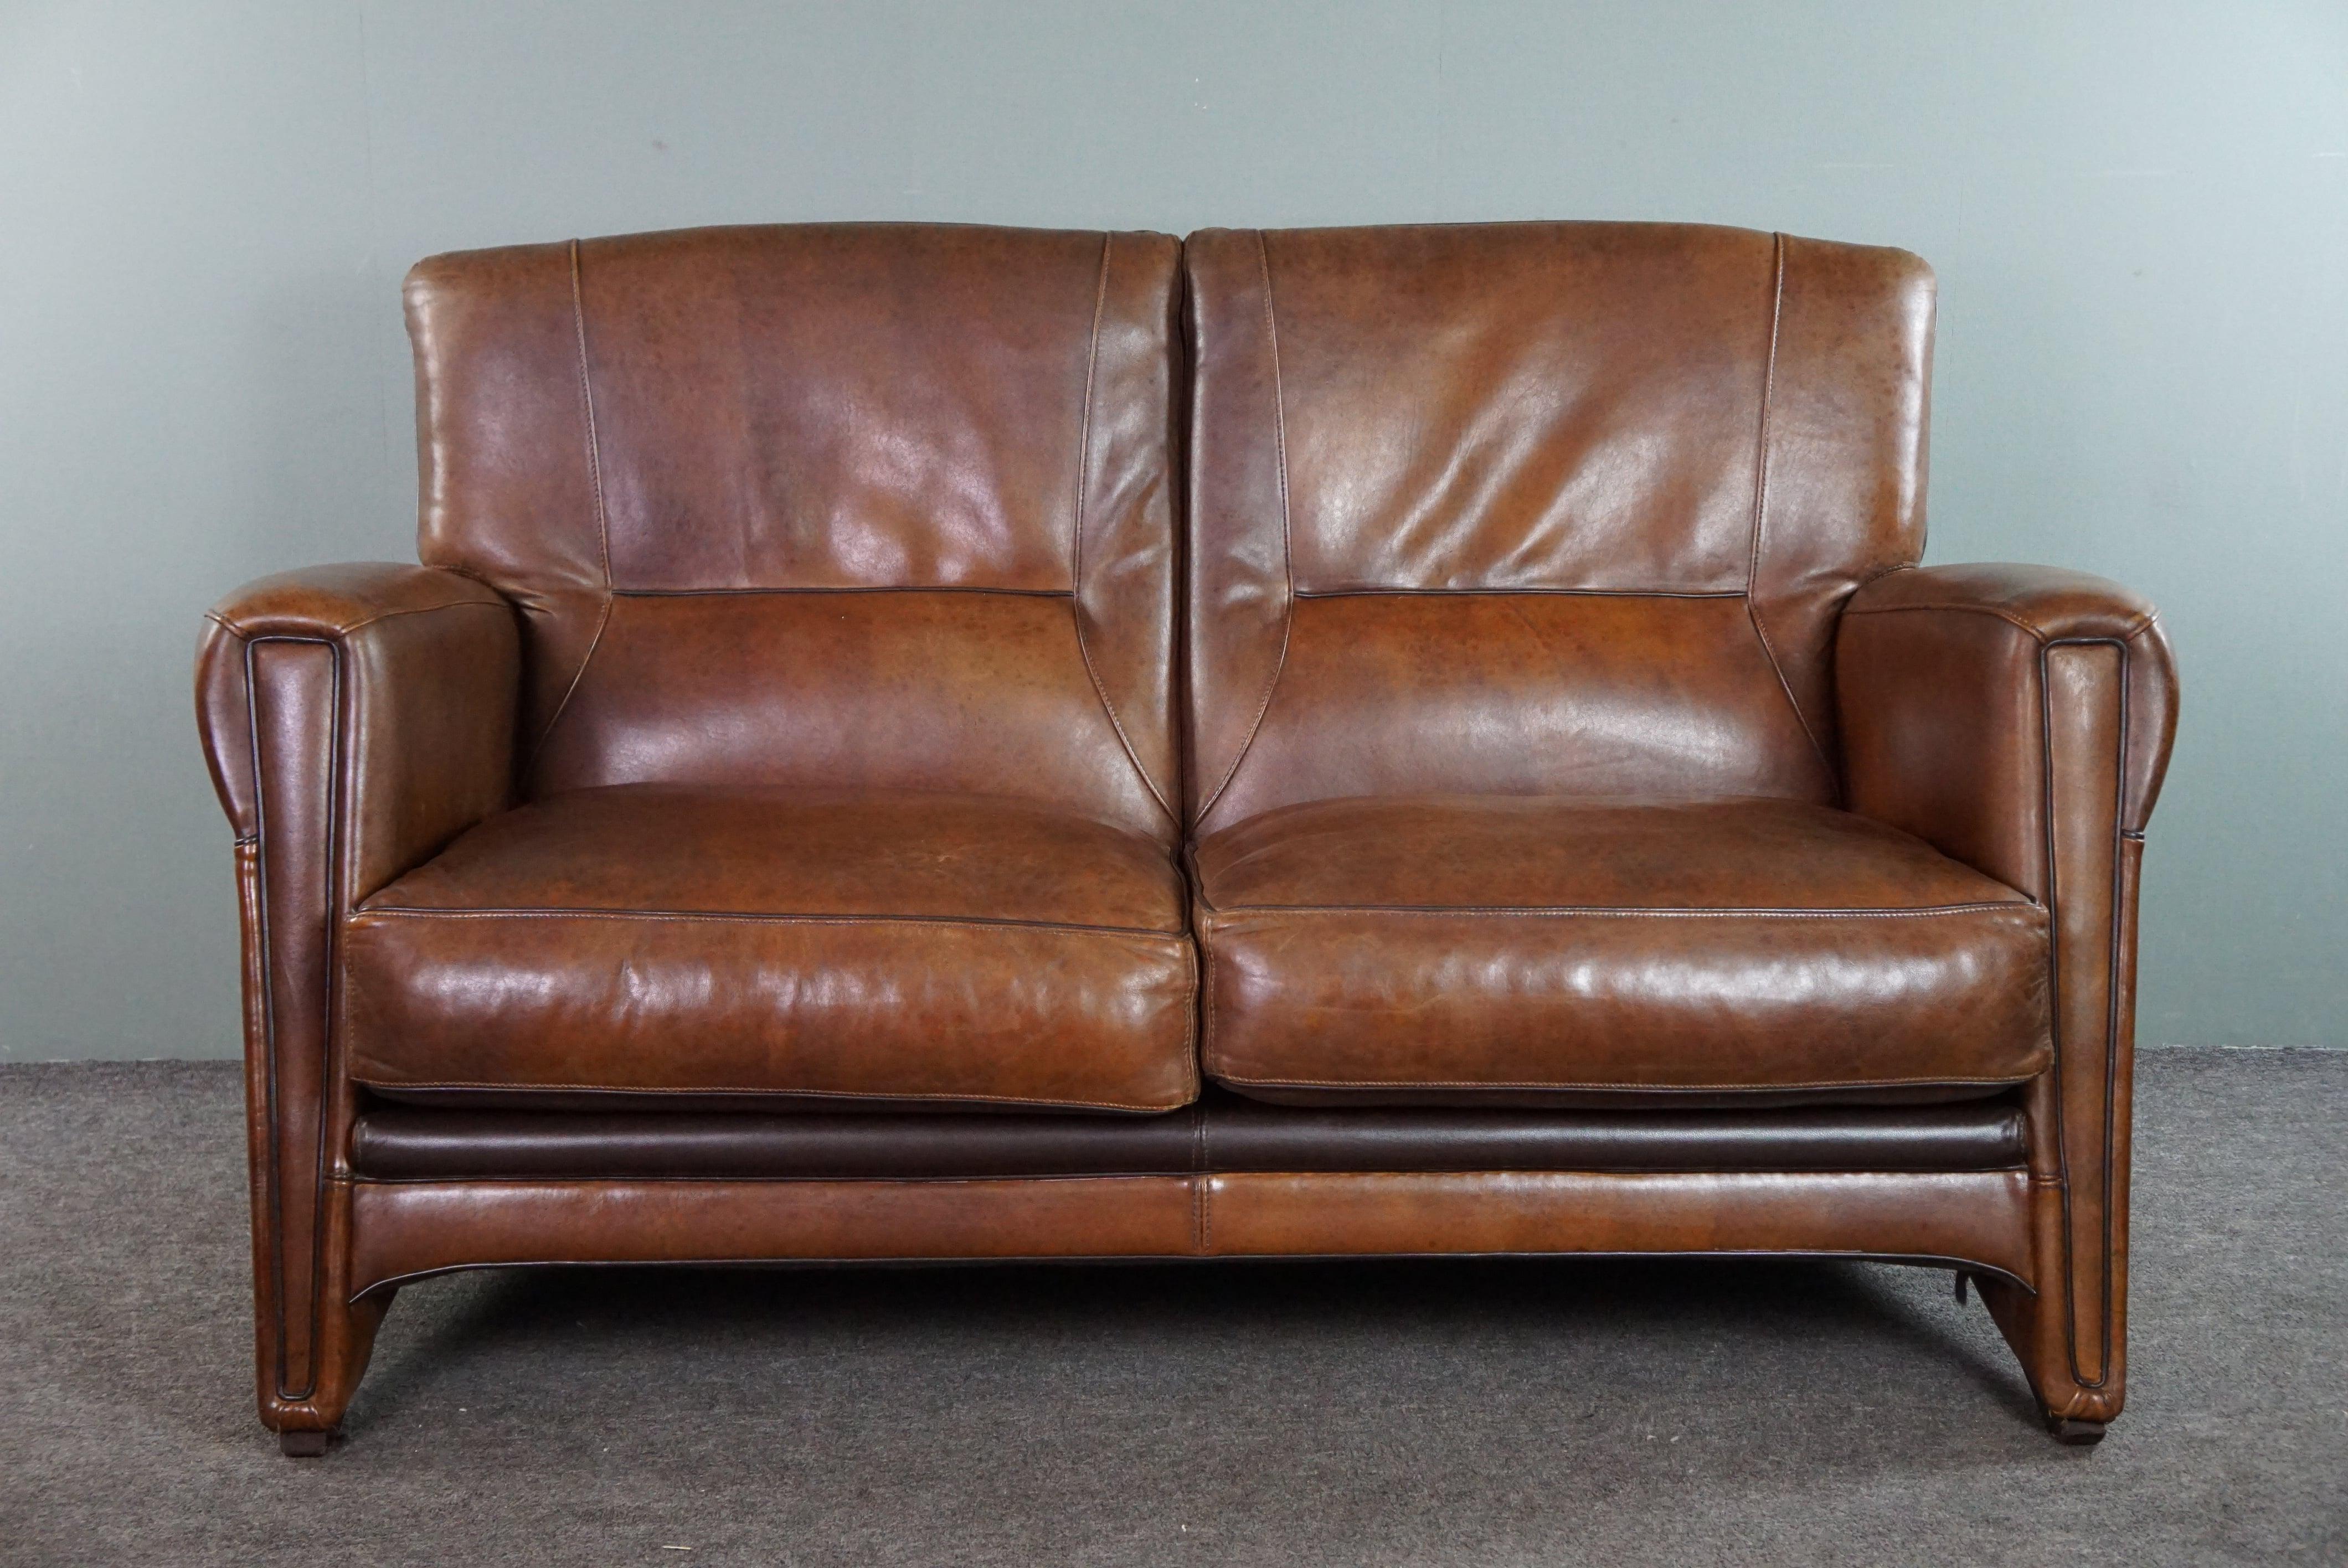 Angeboten wird diese schöne Reihe von einem Schaf-Leder-Design-Sofa und Sessel in gutem Zustand.

Mit dem Kauf dieses Sets werden Sie Ihr Wohnzimmer oder Büro sofort mit etwas Komfortablem, Schönem und Einzigartigem füllen. Sowohl das Sofa als auch